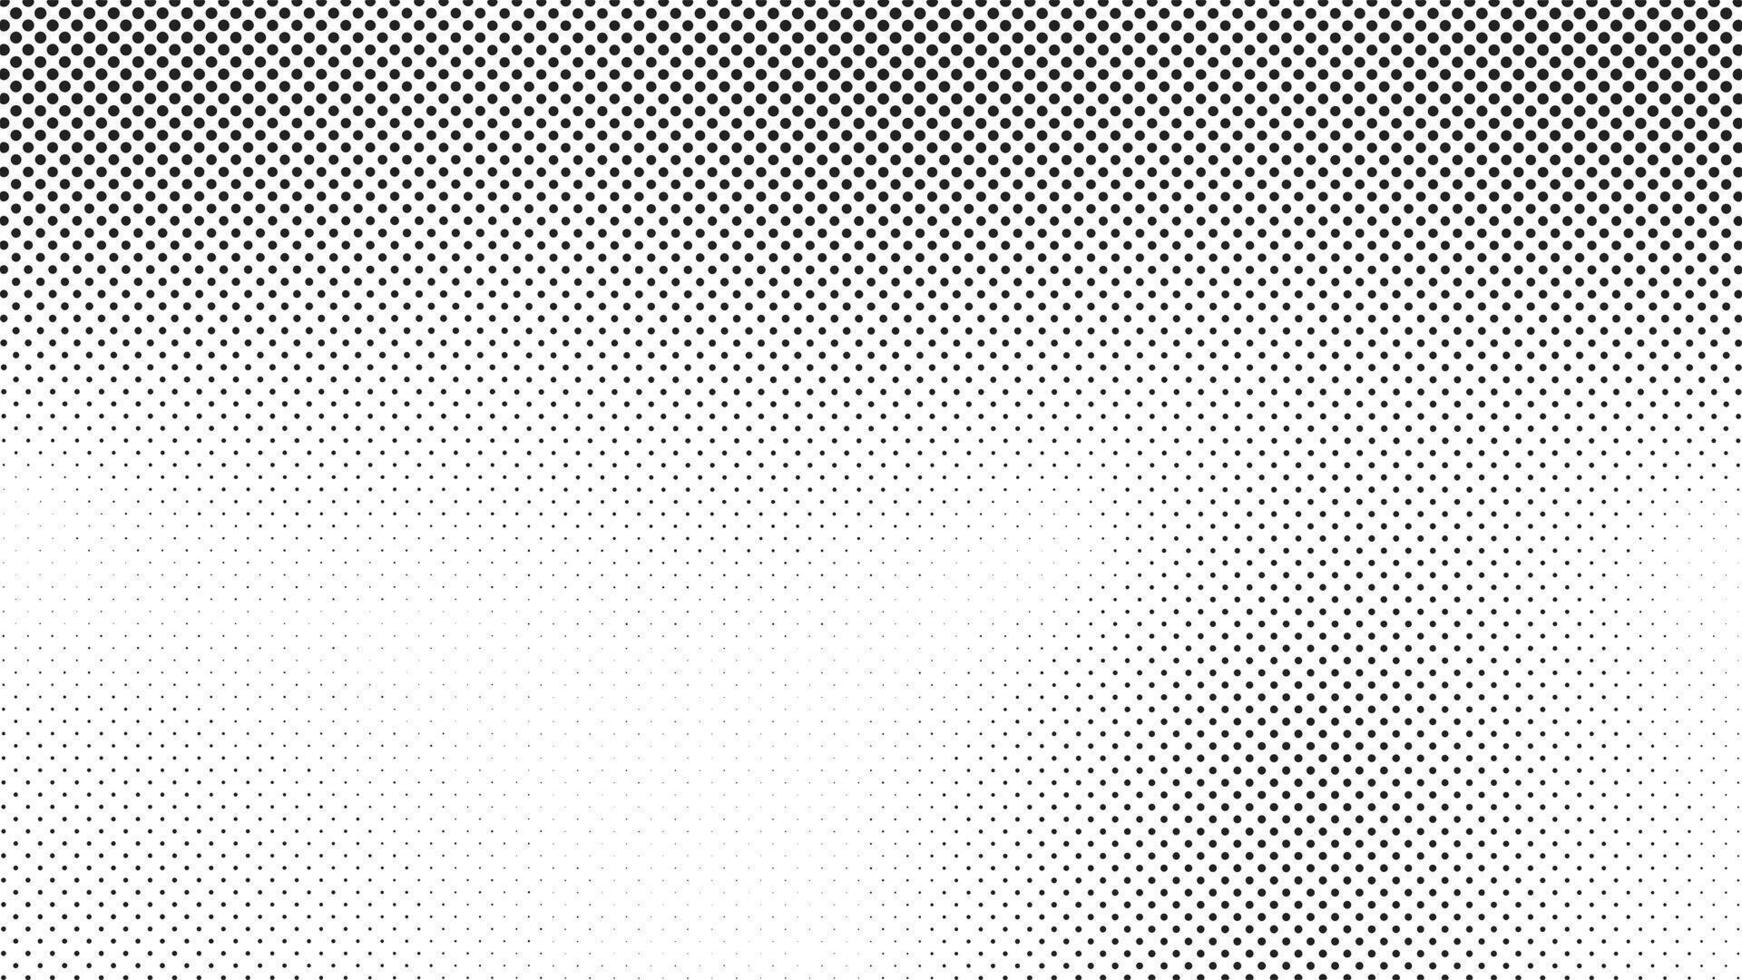 halftone vervaagd helling textuur. grunge halftone gruis achtergrond. wit en zwart zand lawaai behang. vector